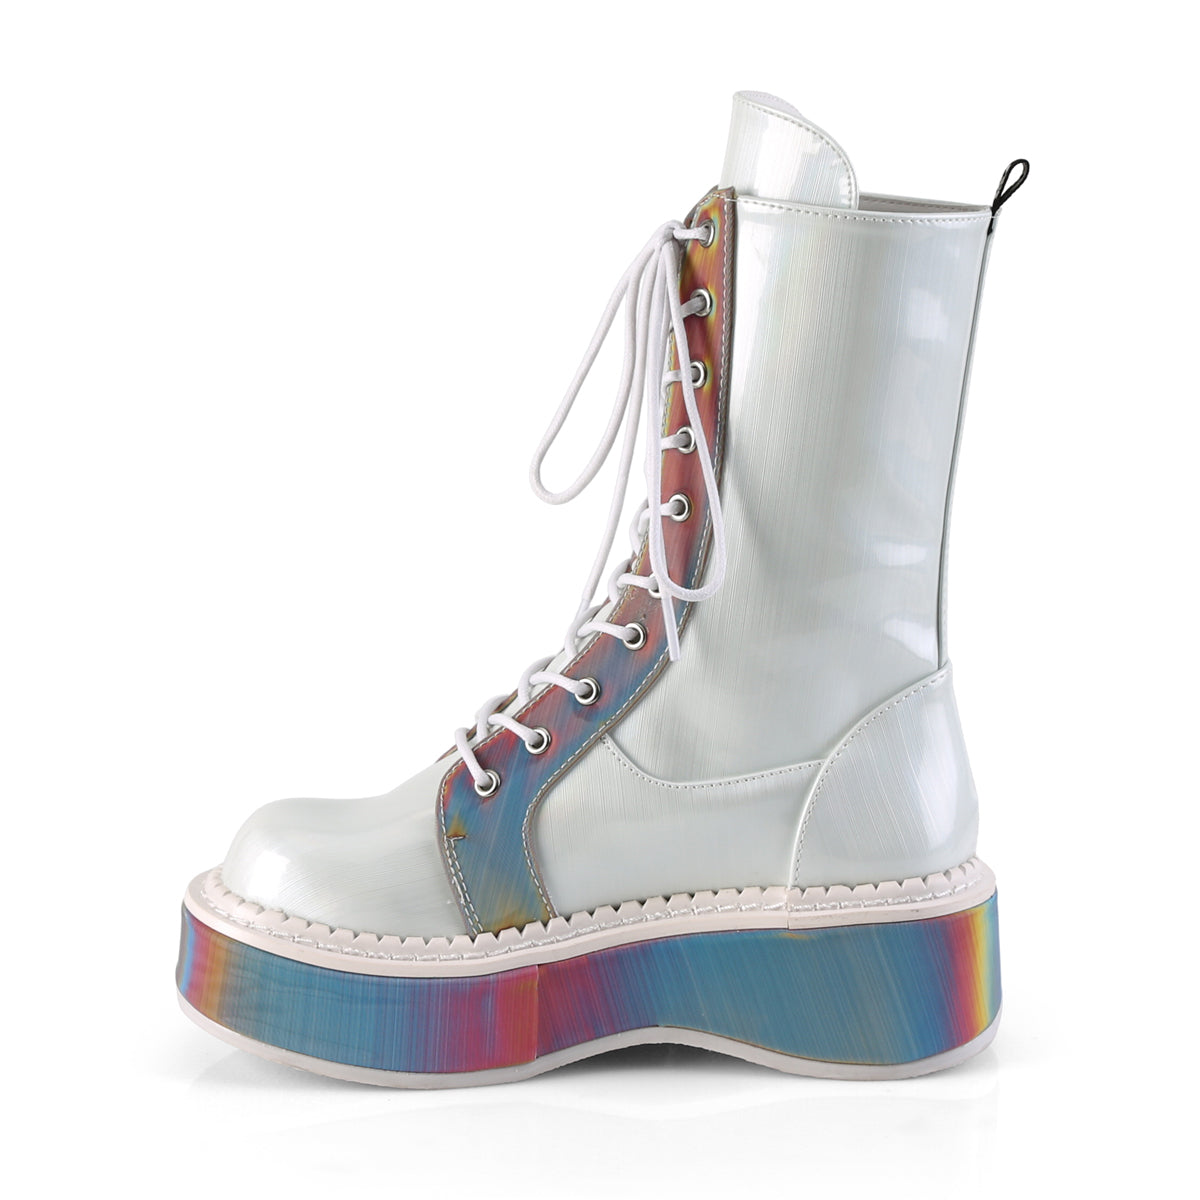 DemoniaCult Womens Boots EMILY-350 Wht Brushed Hologram Vegan Leather-Rainbow Reflective